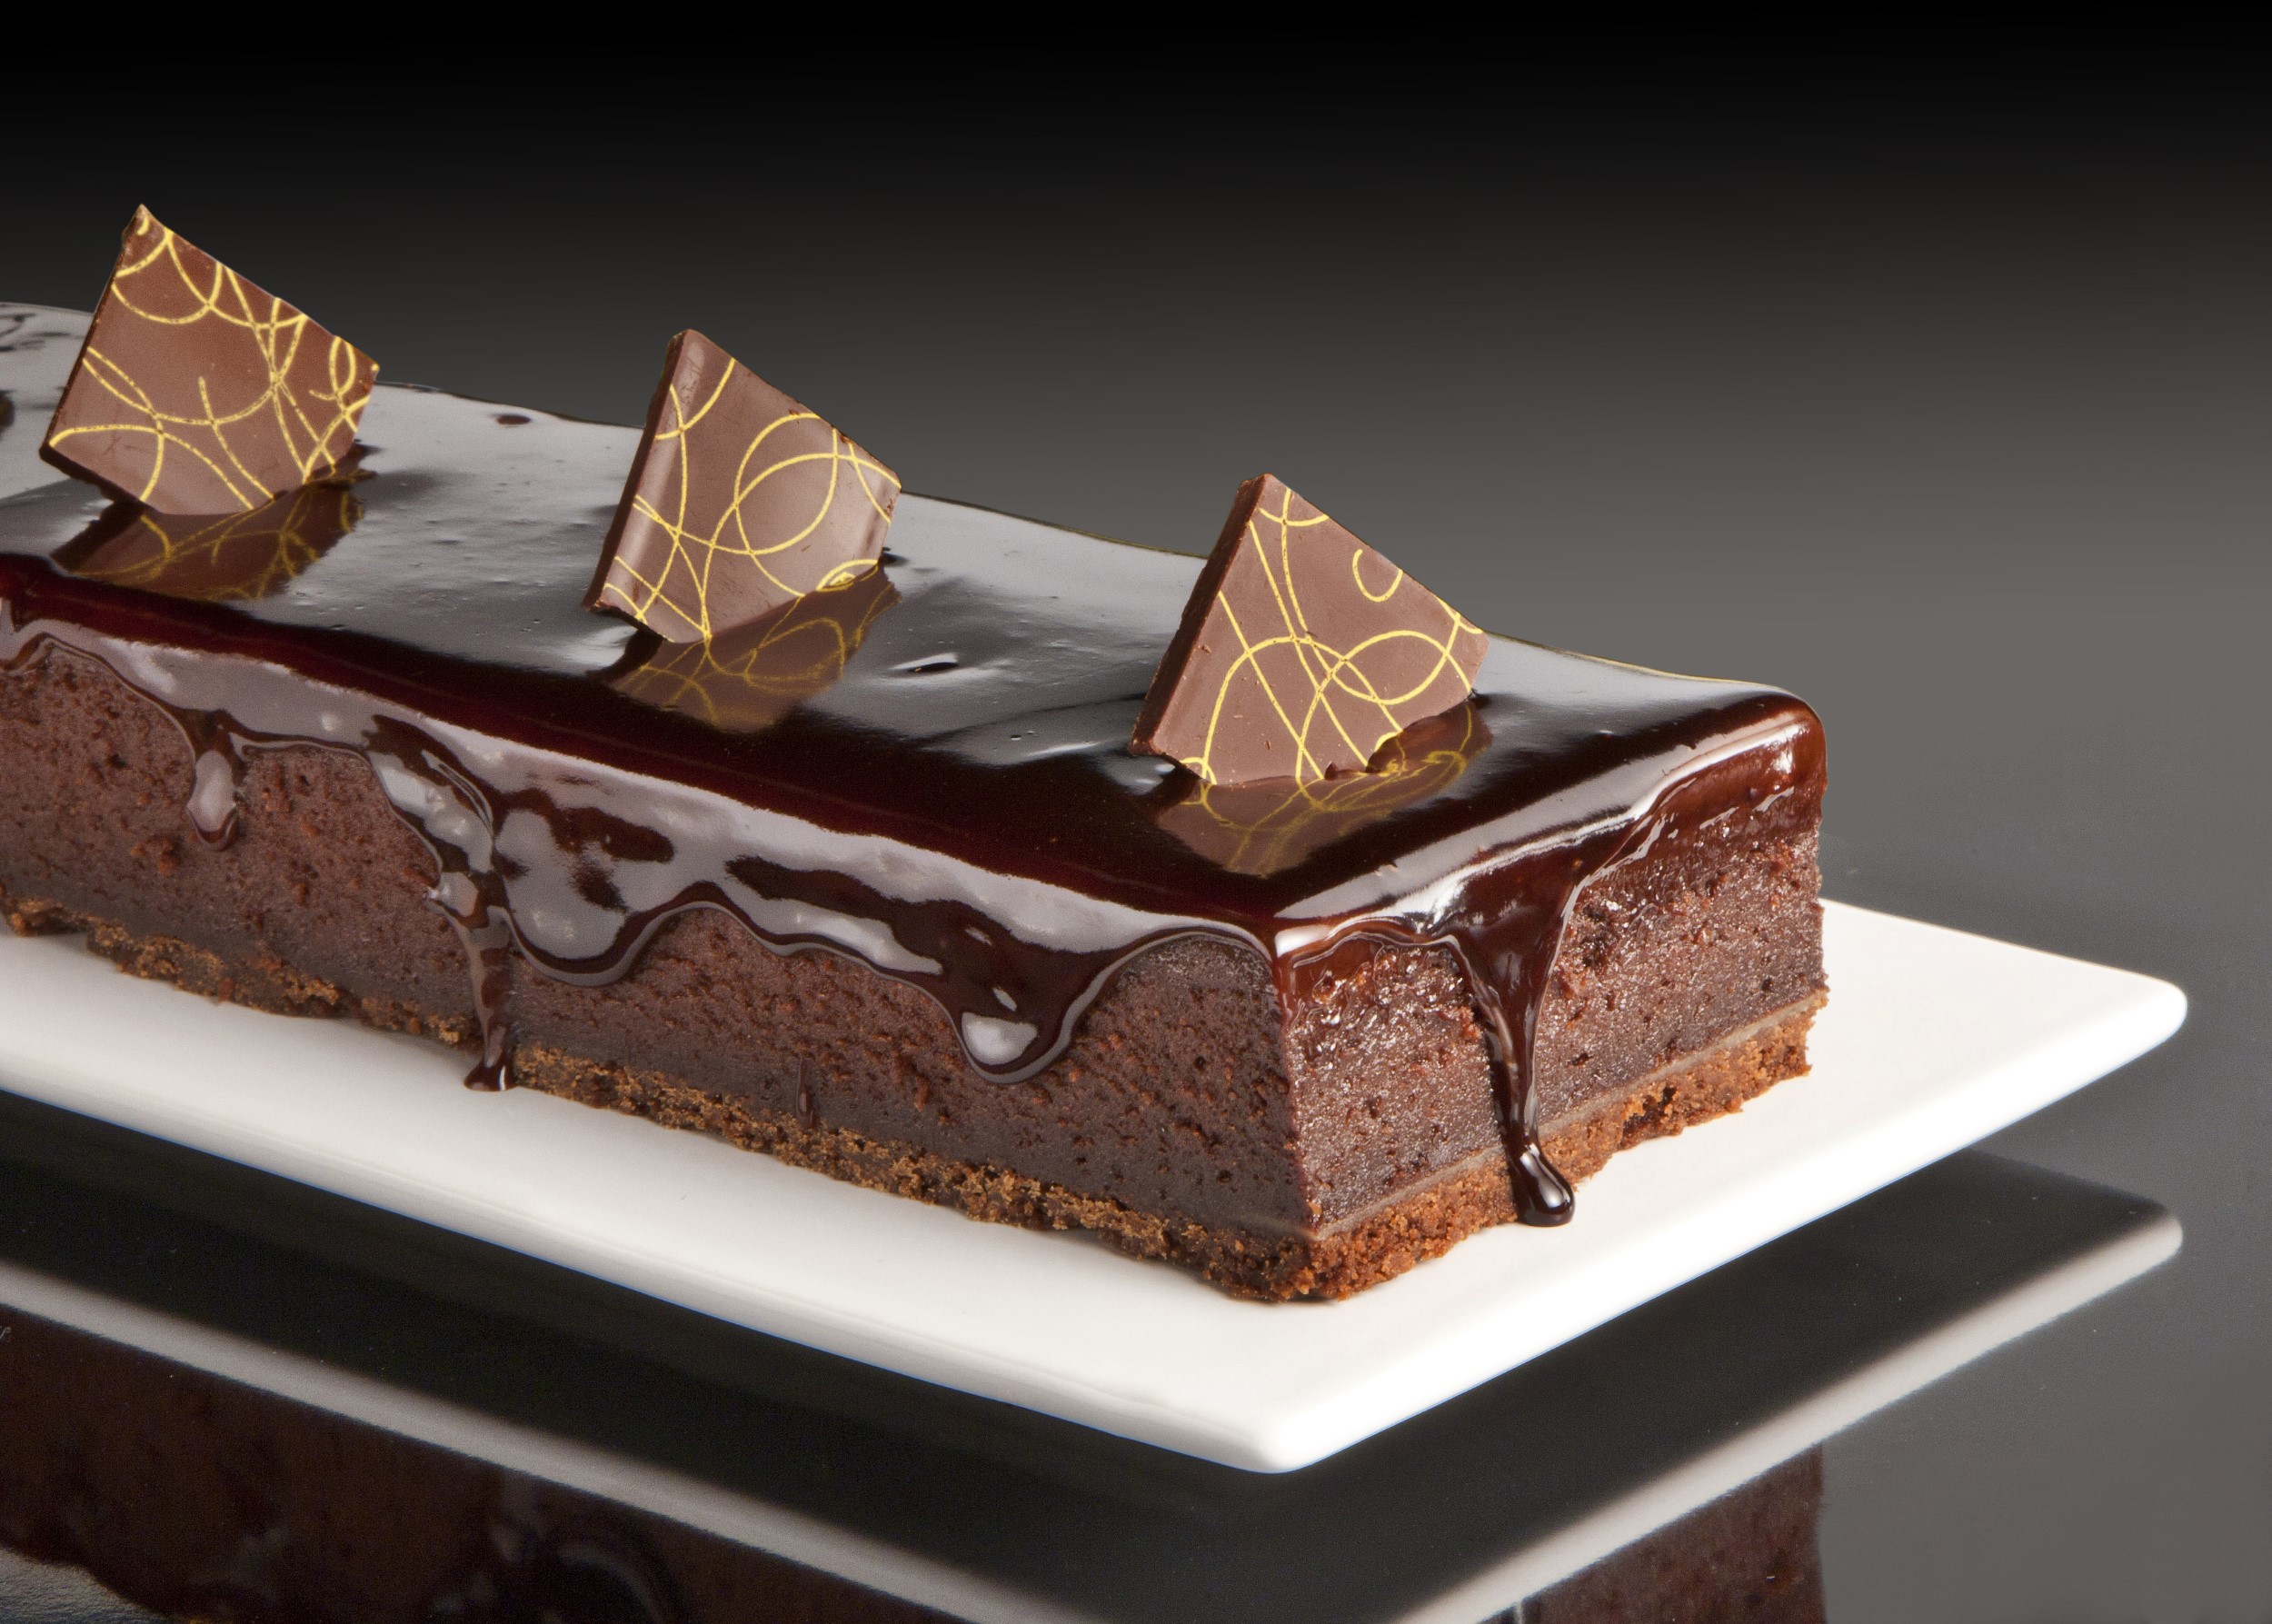 צילום עוגה שוקולד של רולדין על צלחת מלבנית לבנה על רקע שחור משתקף